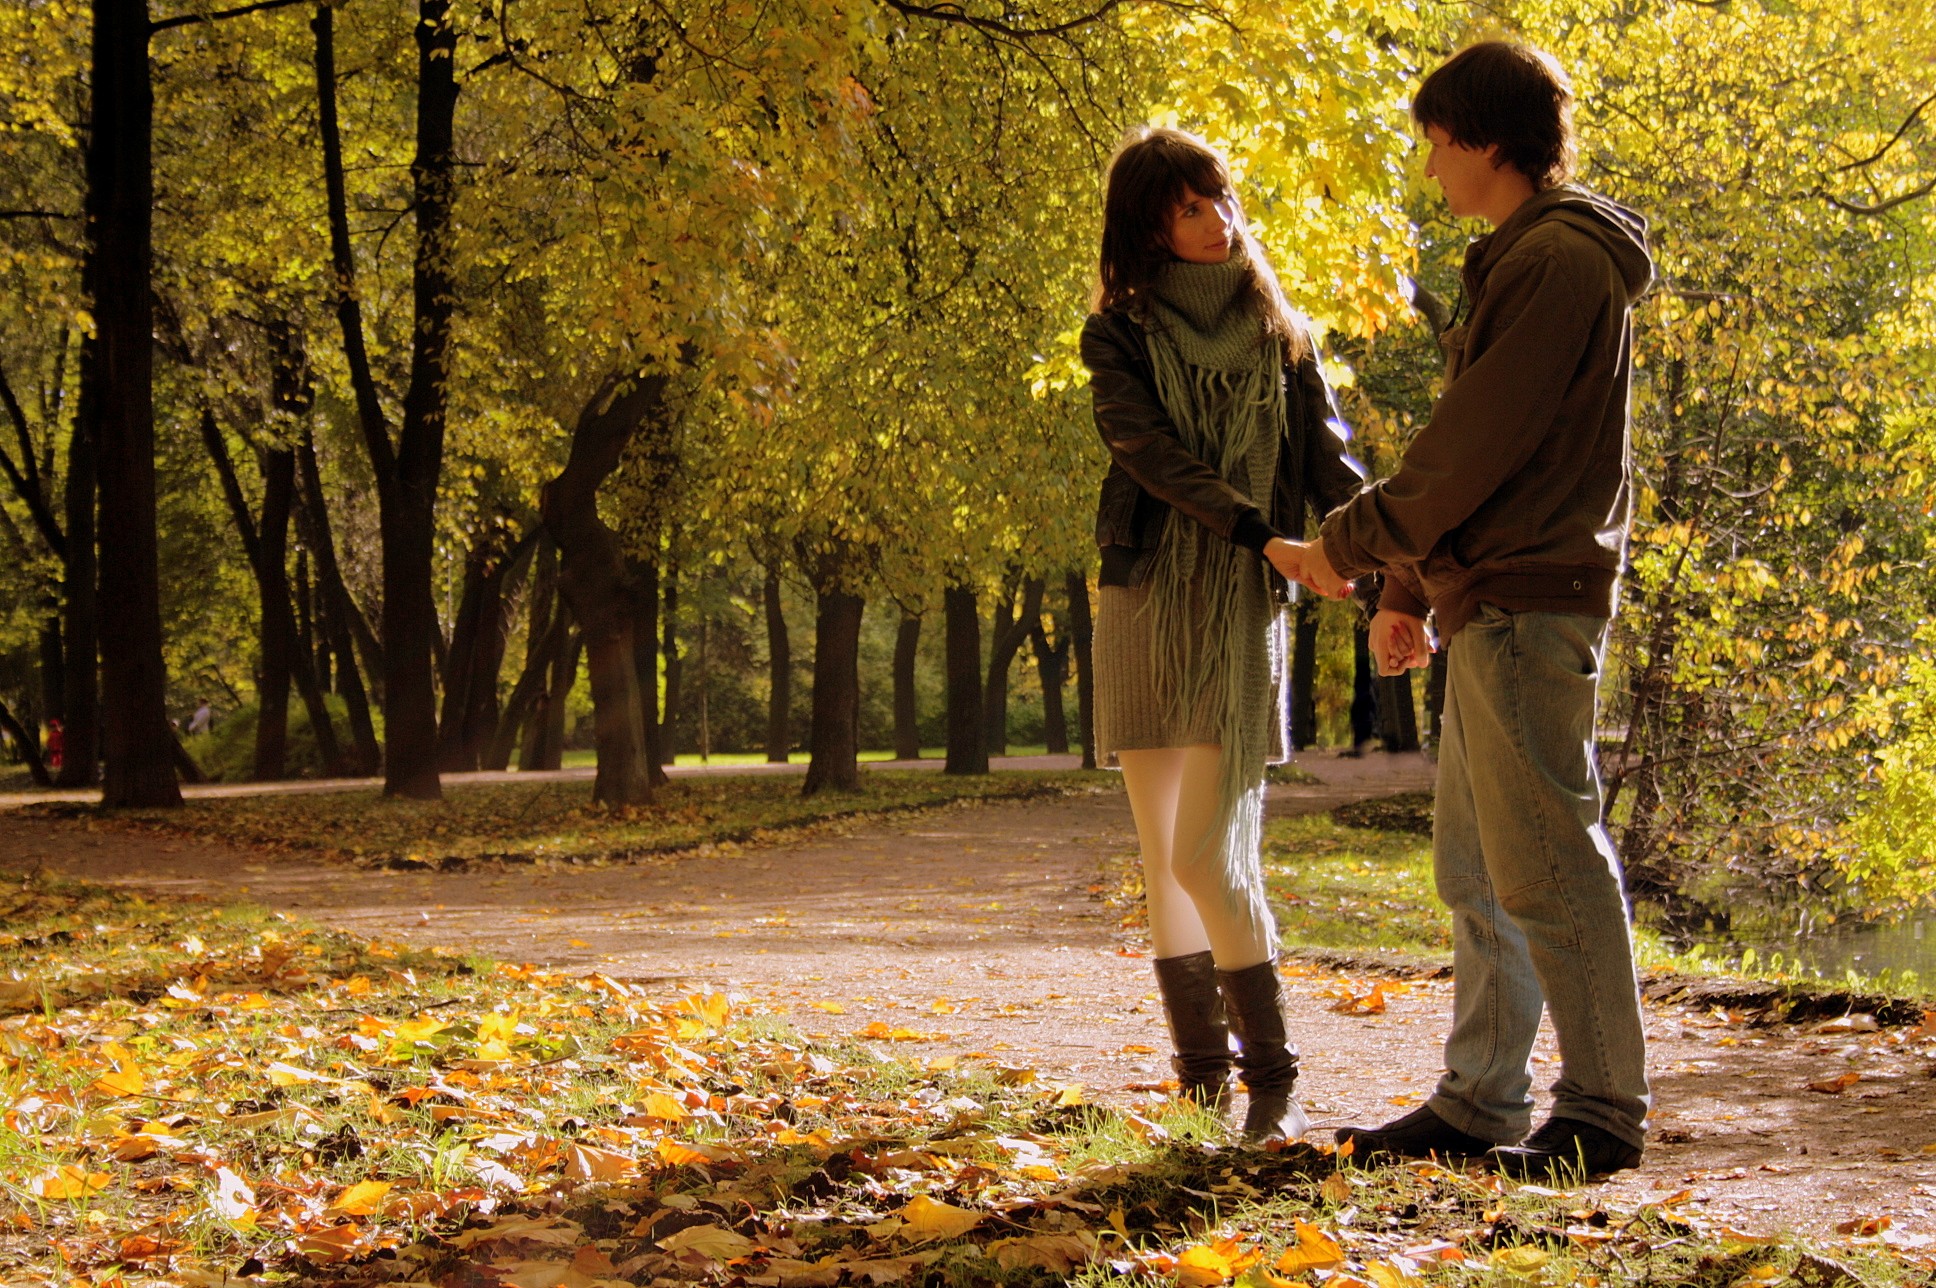 Вновь подойти. Парень и девушка в парке осенью. Прогулка в осеннем парке. Осень в парке. Парень с девушкой в осеннем парке.